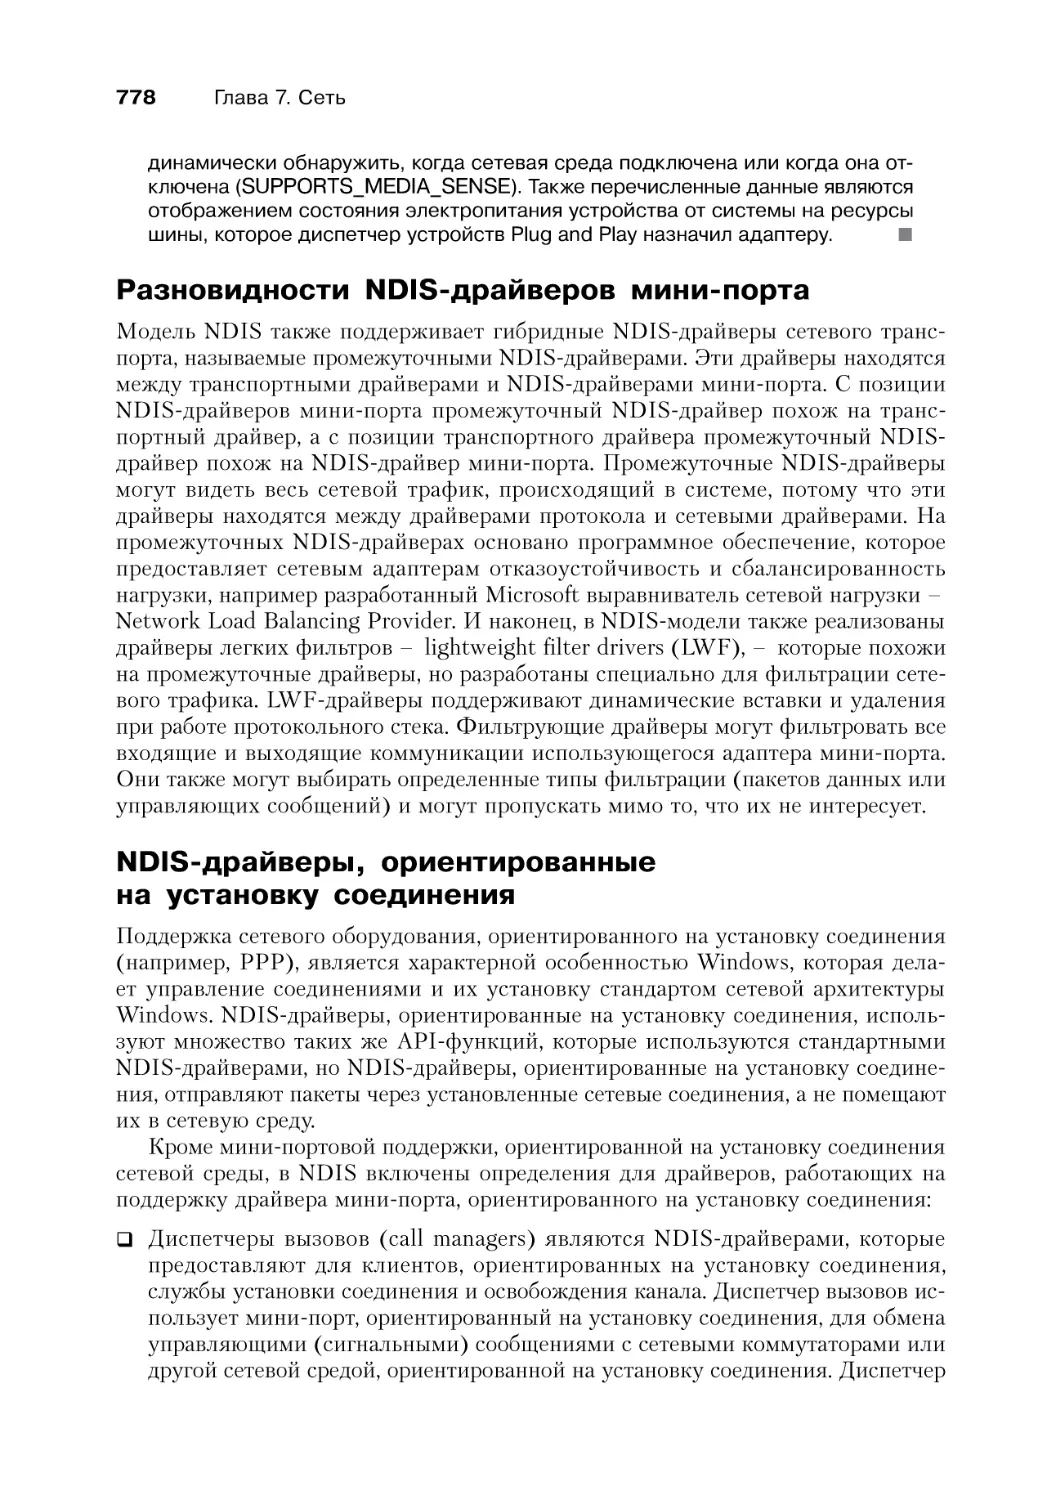 Разновидности NDIS-драйверов минипорта
NDIS-драйверы, ориентированные на установку соединения